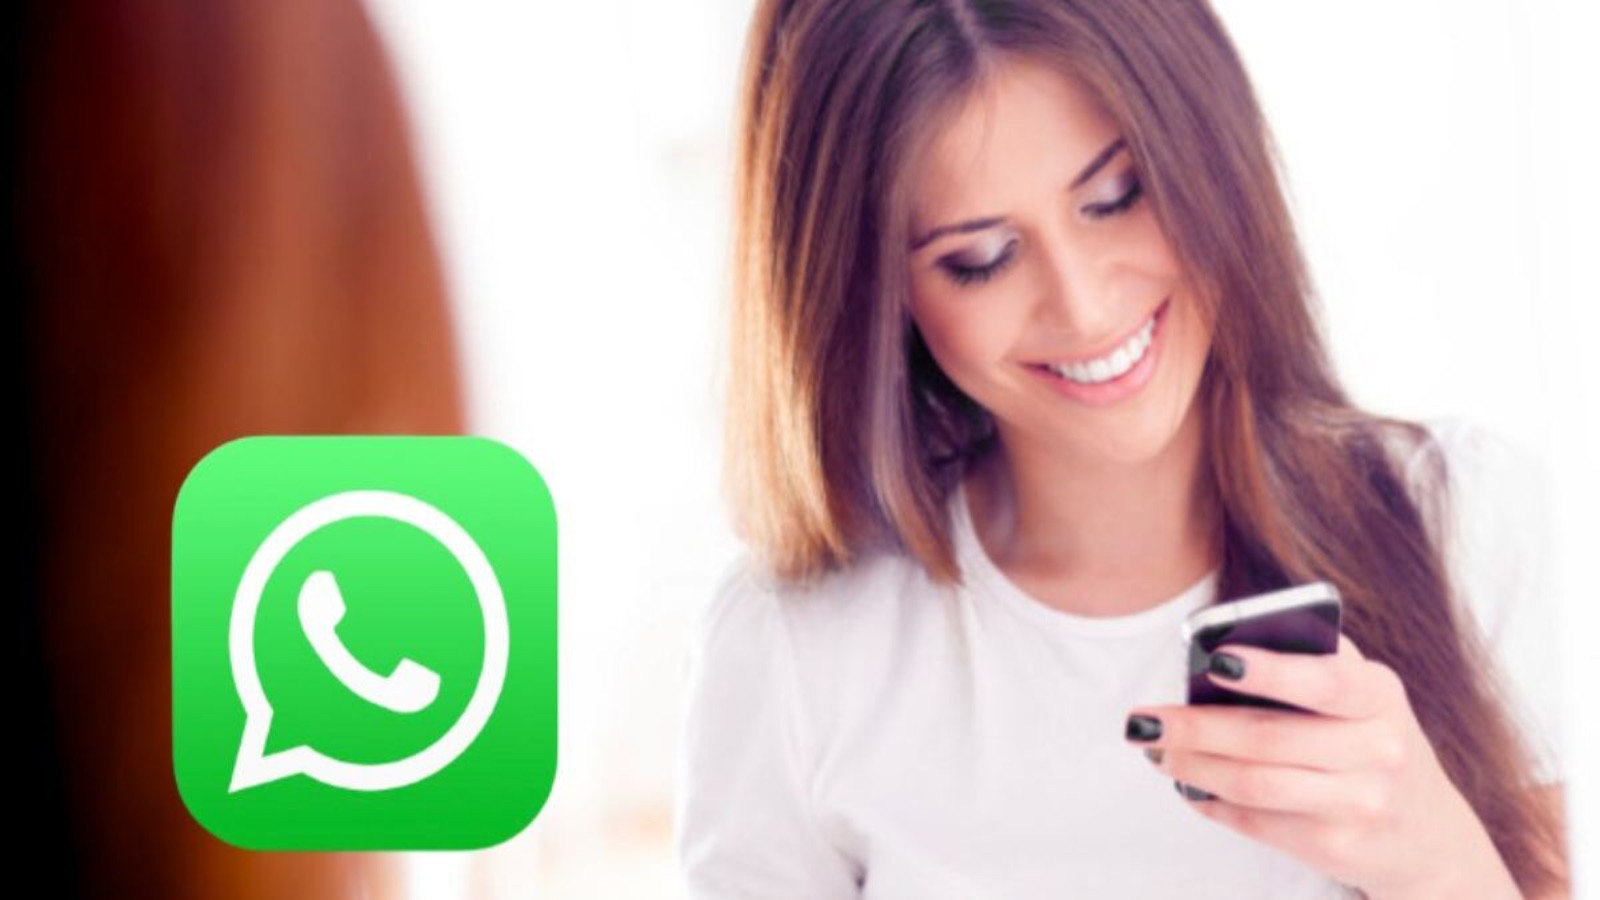 WhatsApp, nuovo aggiornamento: adesso cercare le chat è più facile e veloce